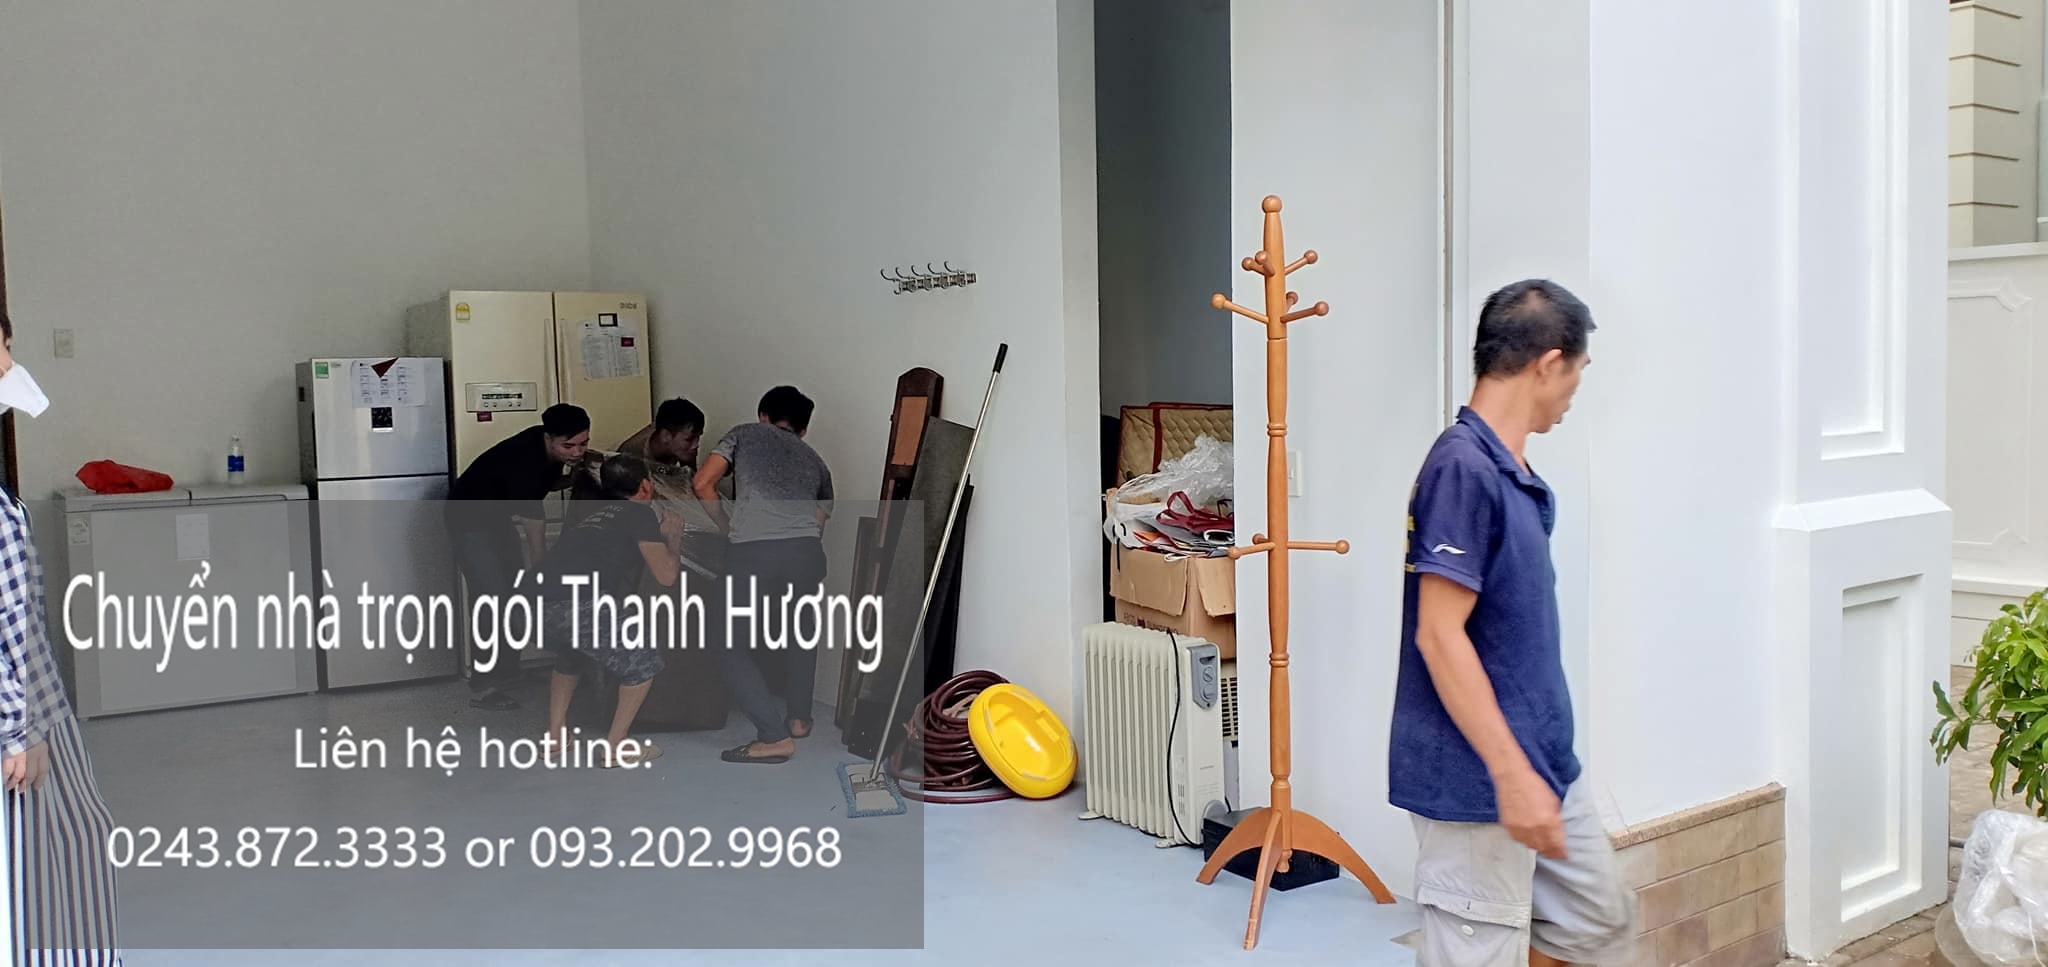 Dịch vụ chuyển văn phòng giá rẻ tại đường Duy Tân